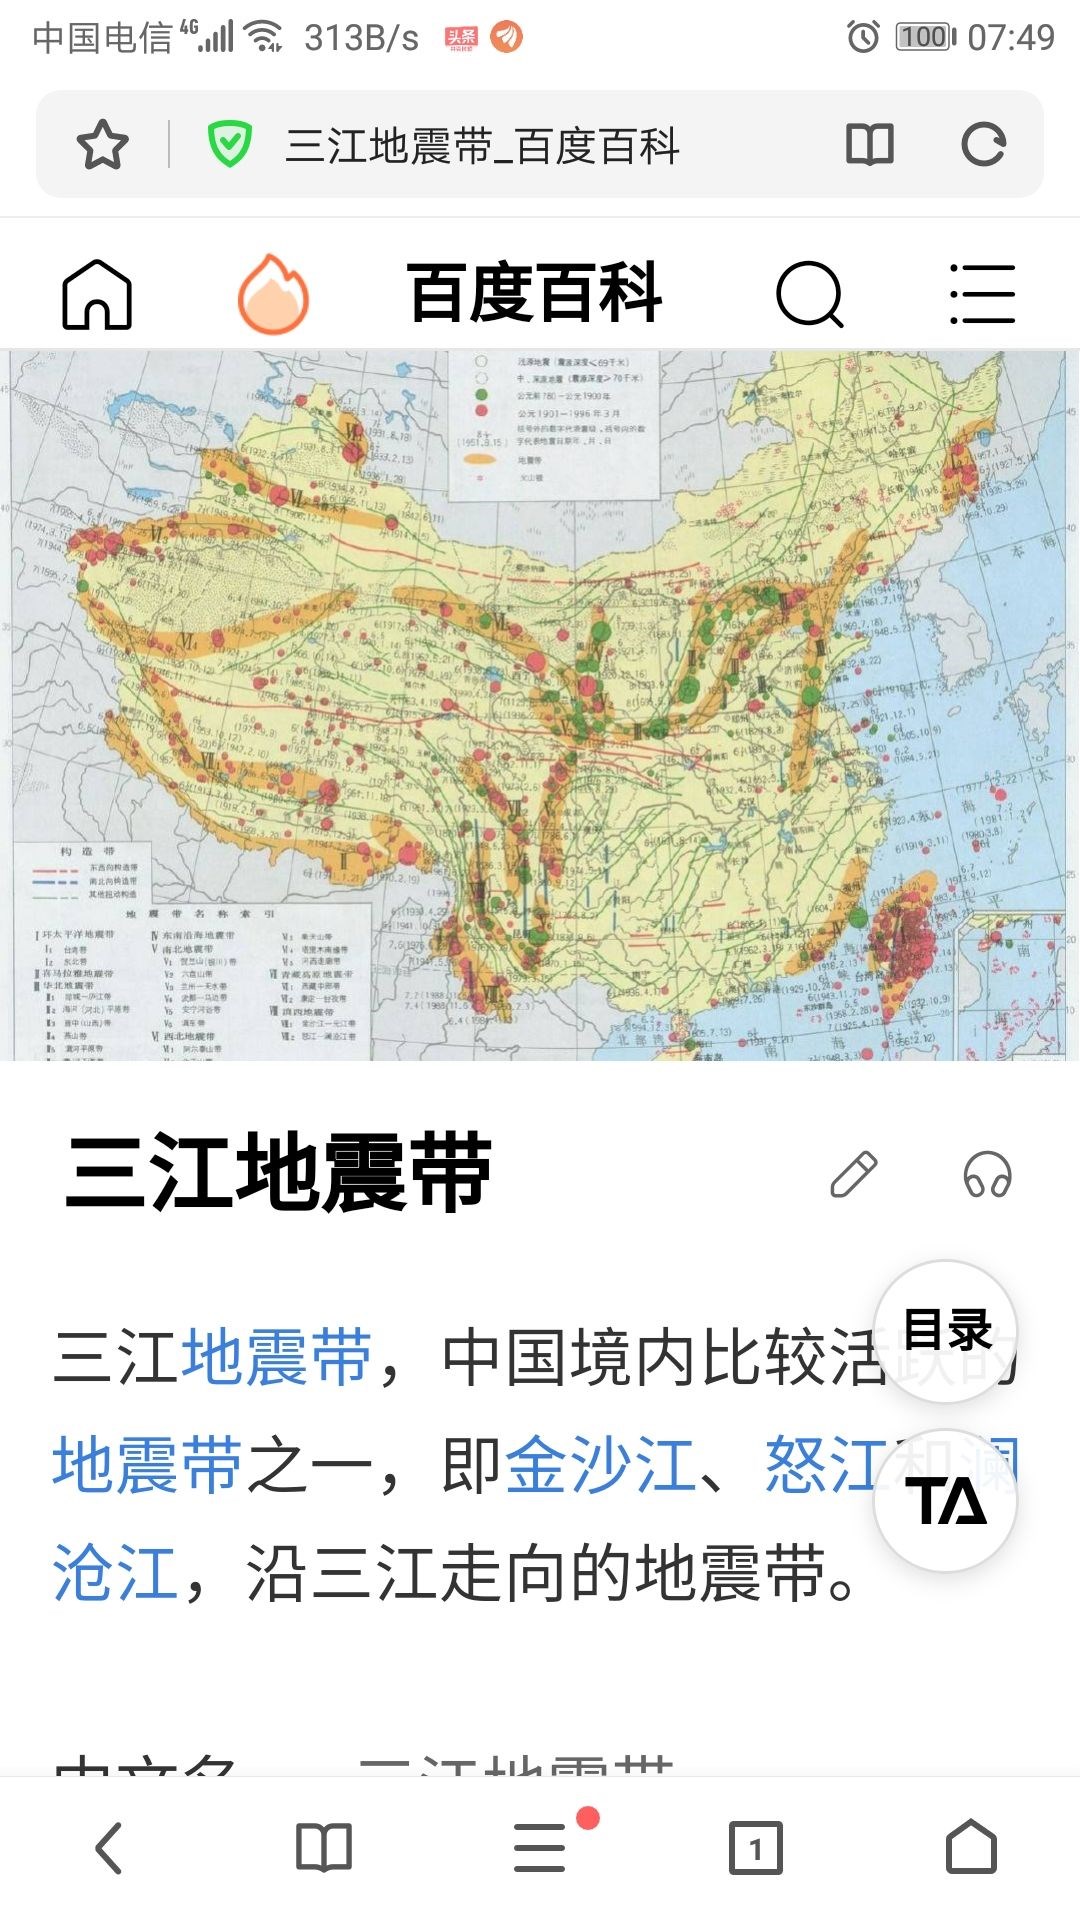 中国四大地震带图片